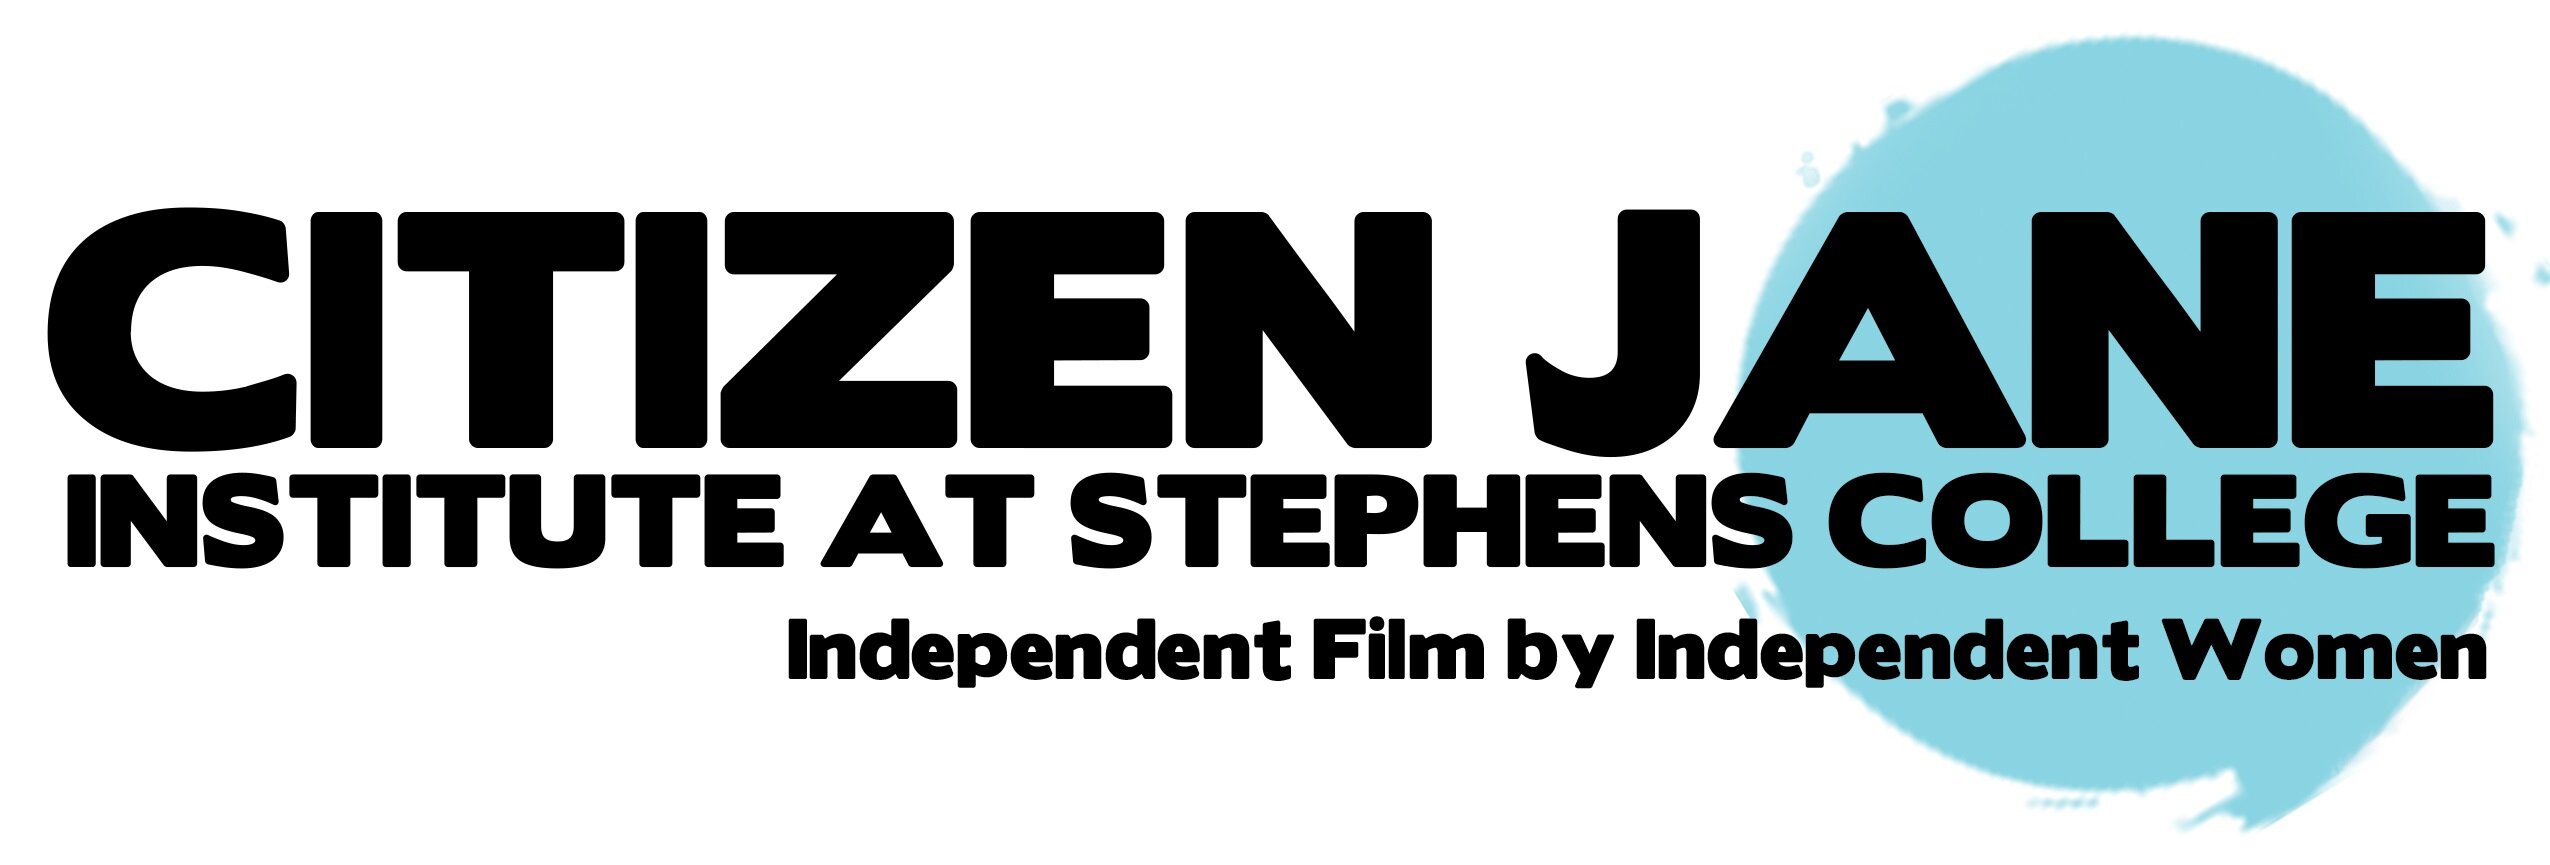 Citizen Jane Film Institute